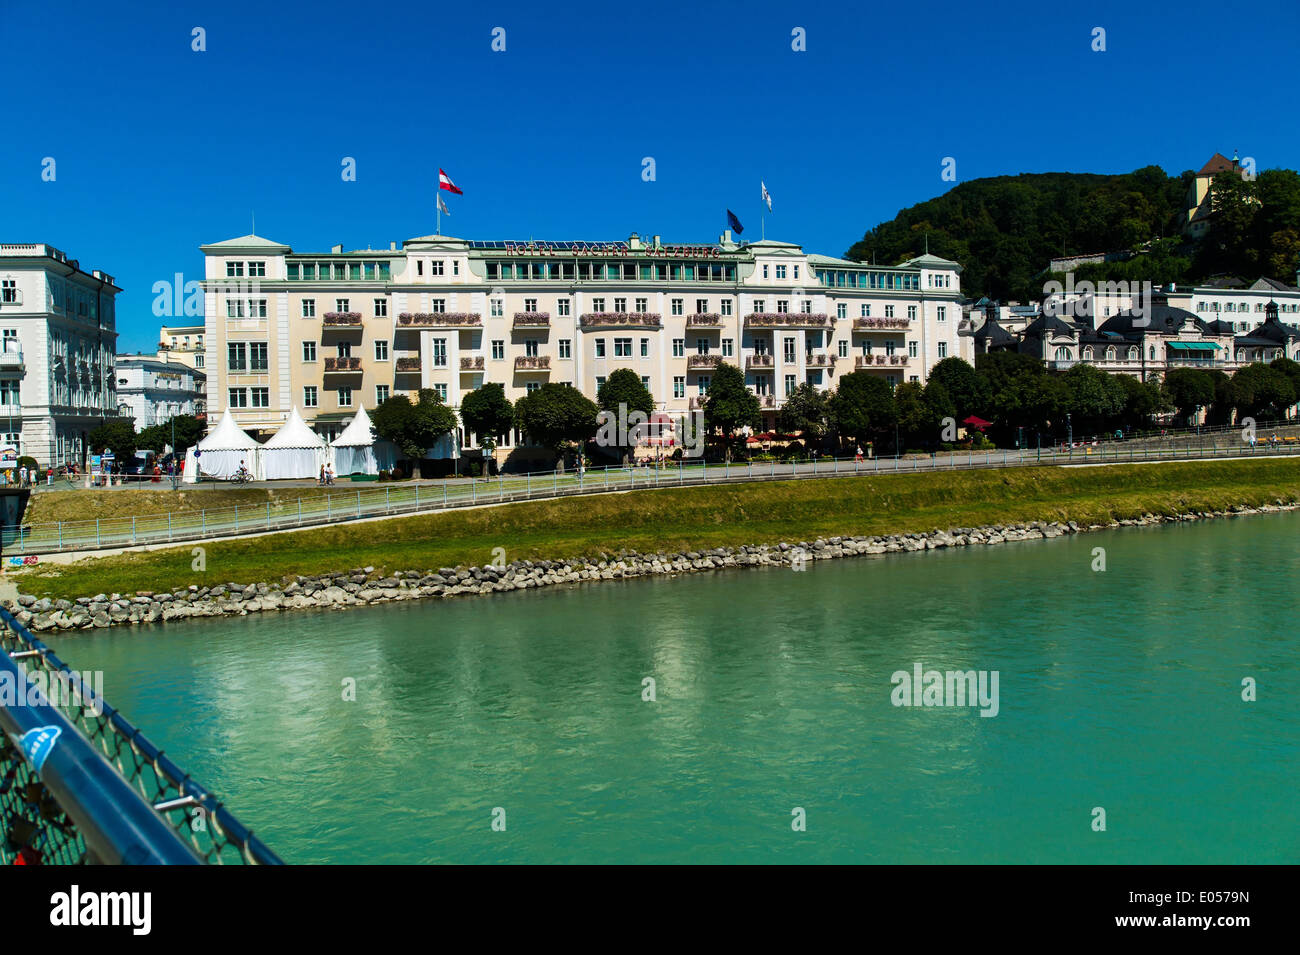 The hotel of Sacher in the city of Salzburg in Austria, Das Hotel Sacher in der Stadt Salzburg in oesterreich Stock Photo